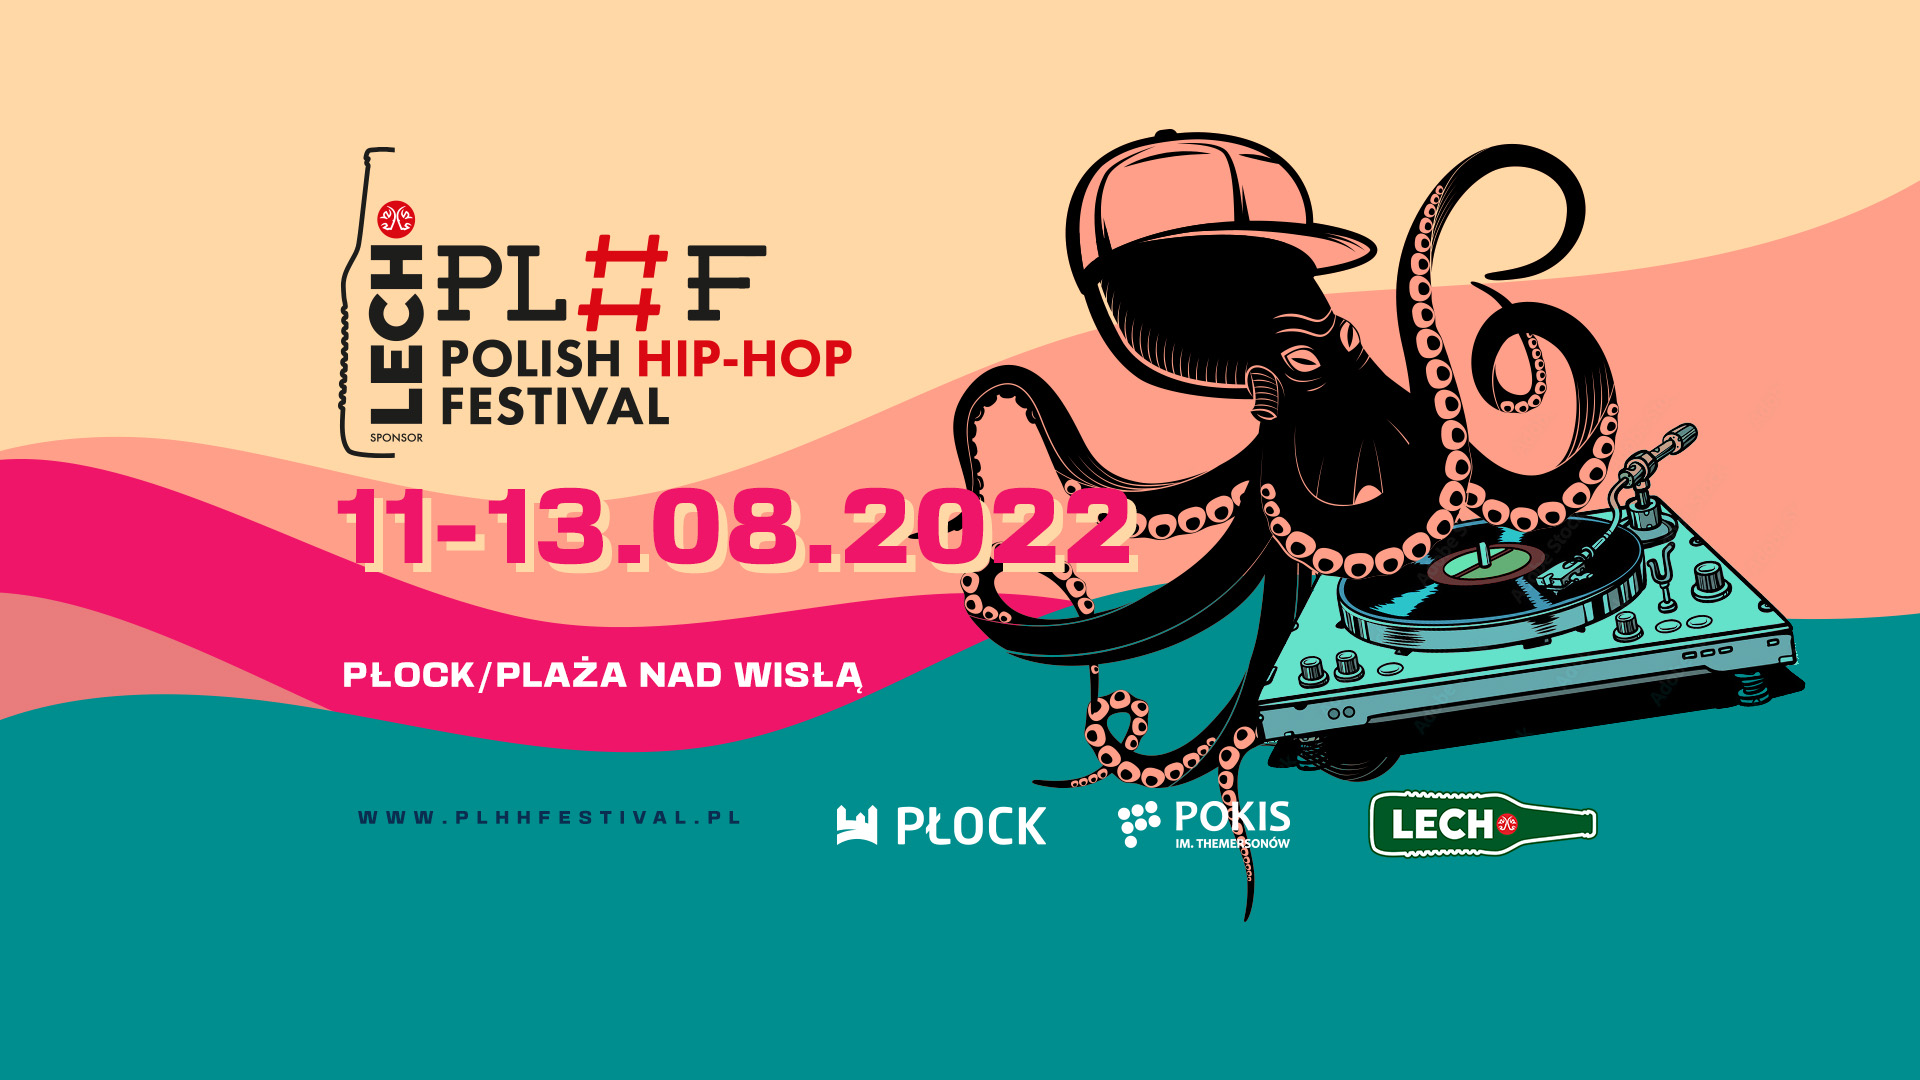 Lech Polish Hip-Hop Festival 2k22 z największym ogłoszeniem w historii!